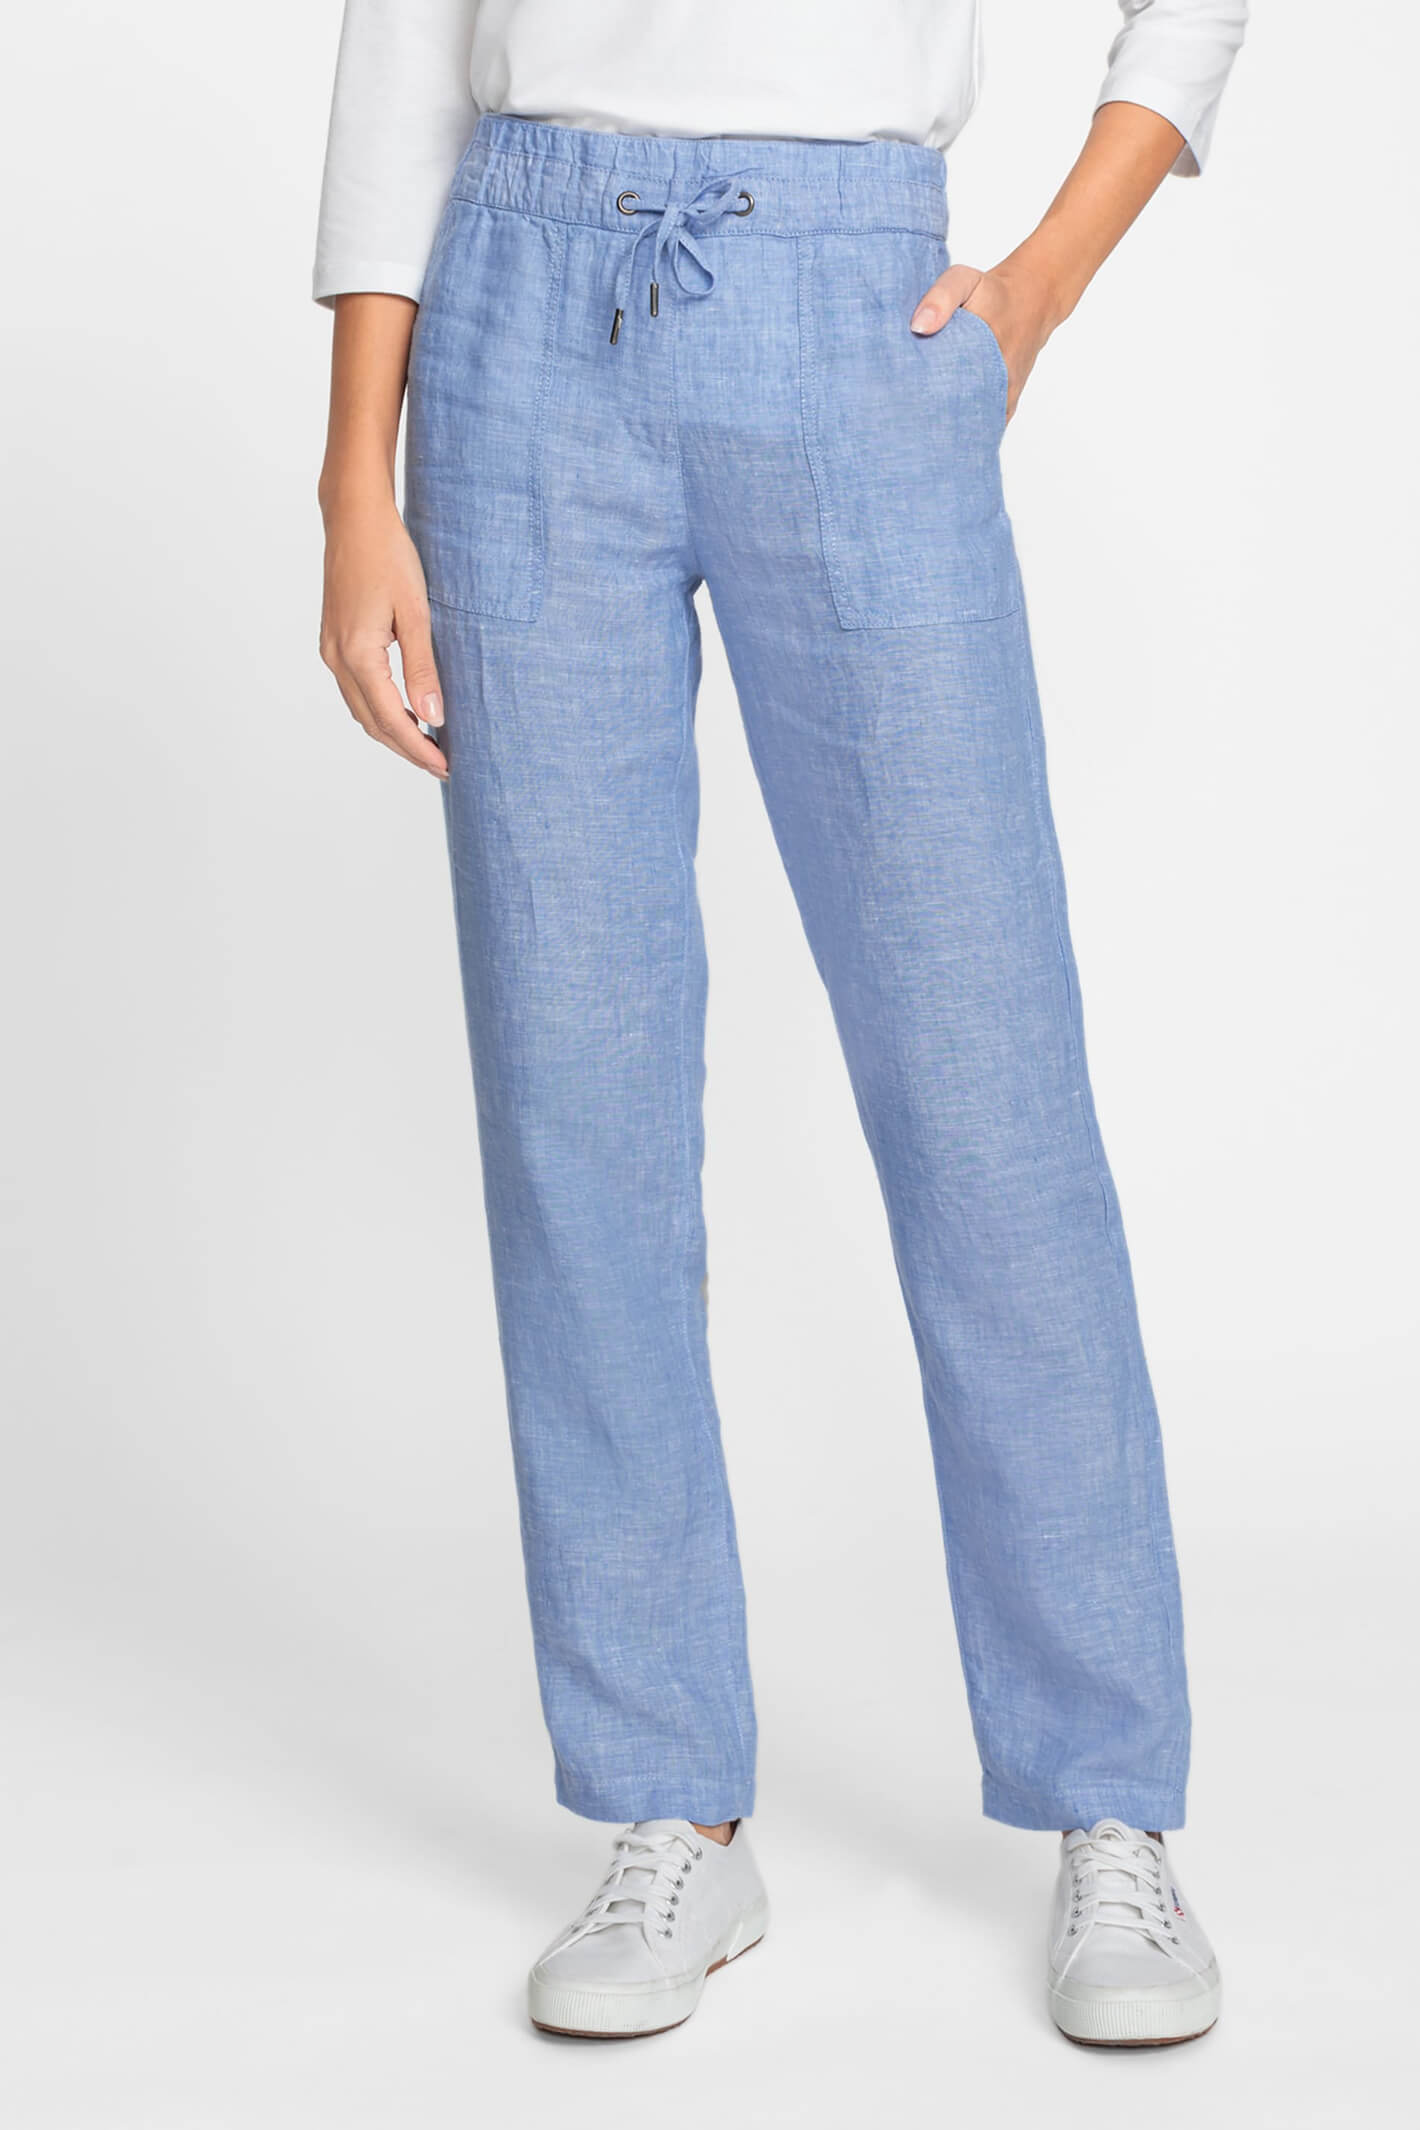 Light blue cotton linen pants by BOHAME | The Secret Label